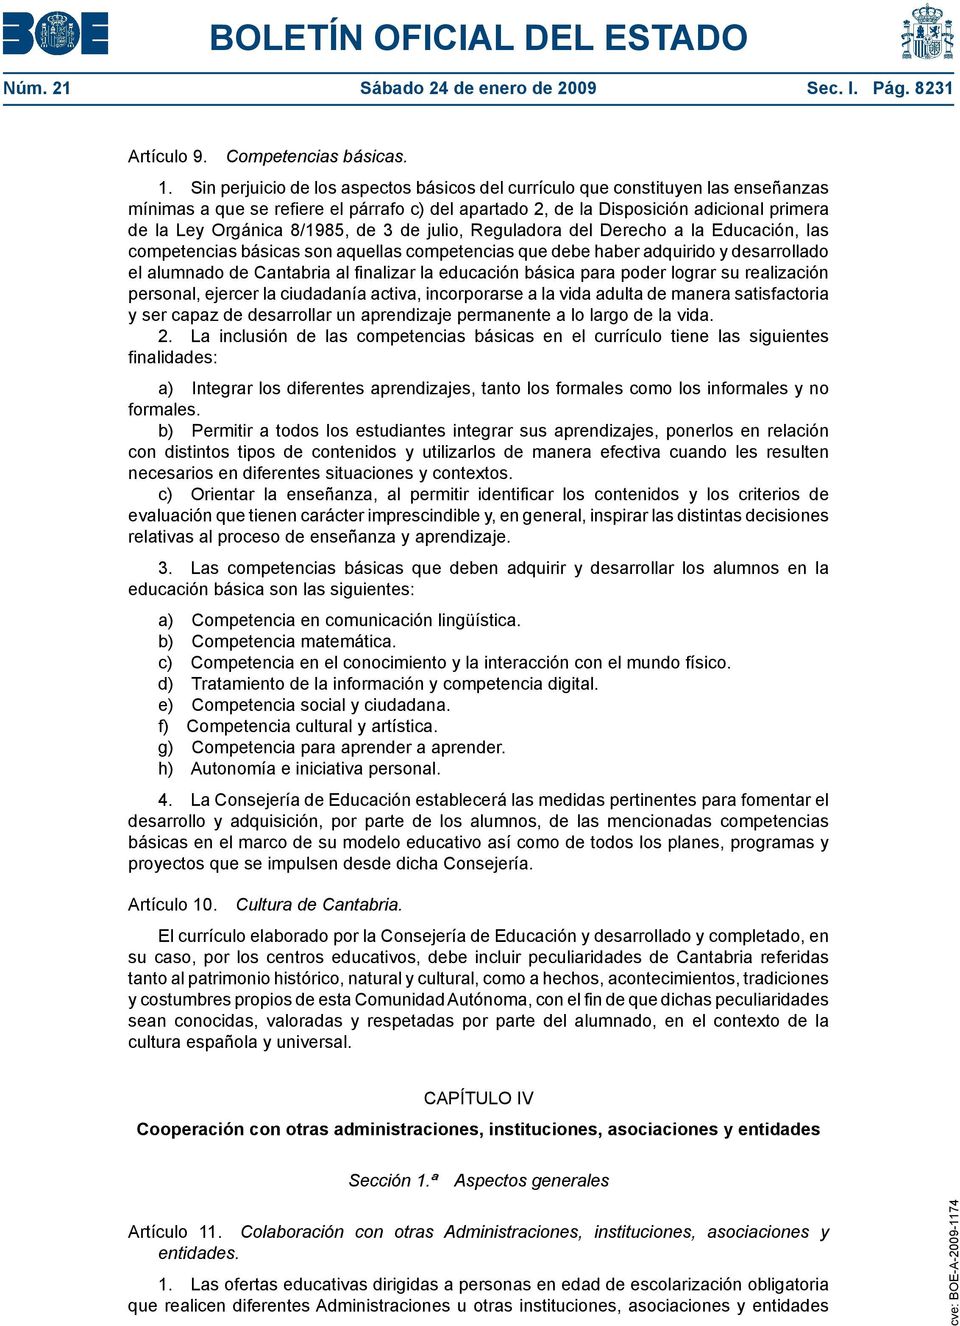 8/1985, de 3 de julio, Reguladora del Derecho a la Educación, las competencias básicas son aquellas competencias que debe haber adquirido y desarrollado el alumnado de Cantabria al finalizar la